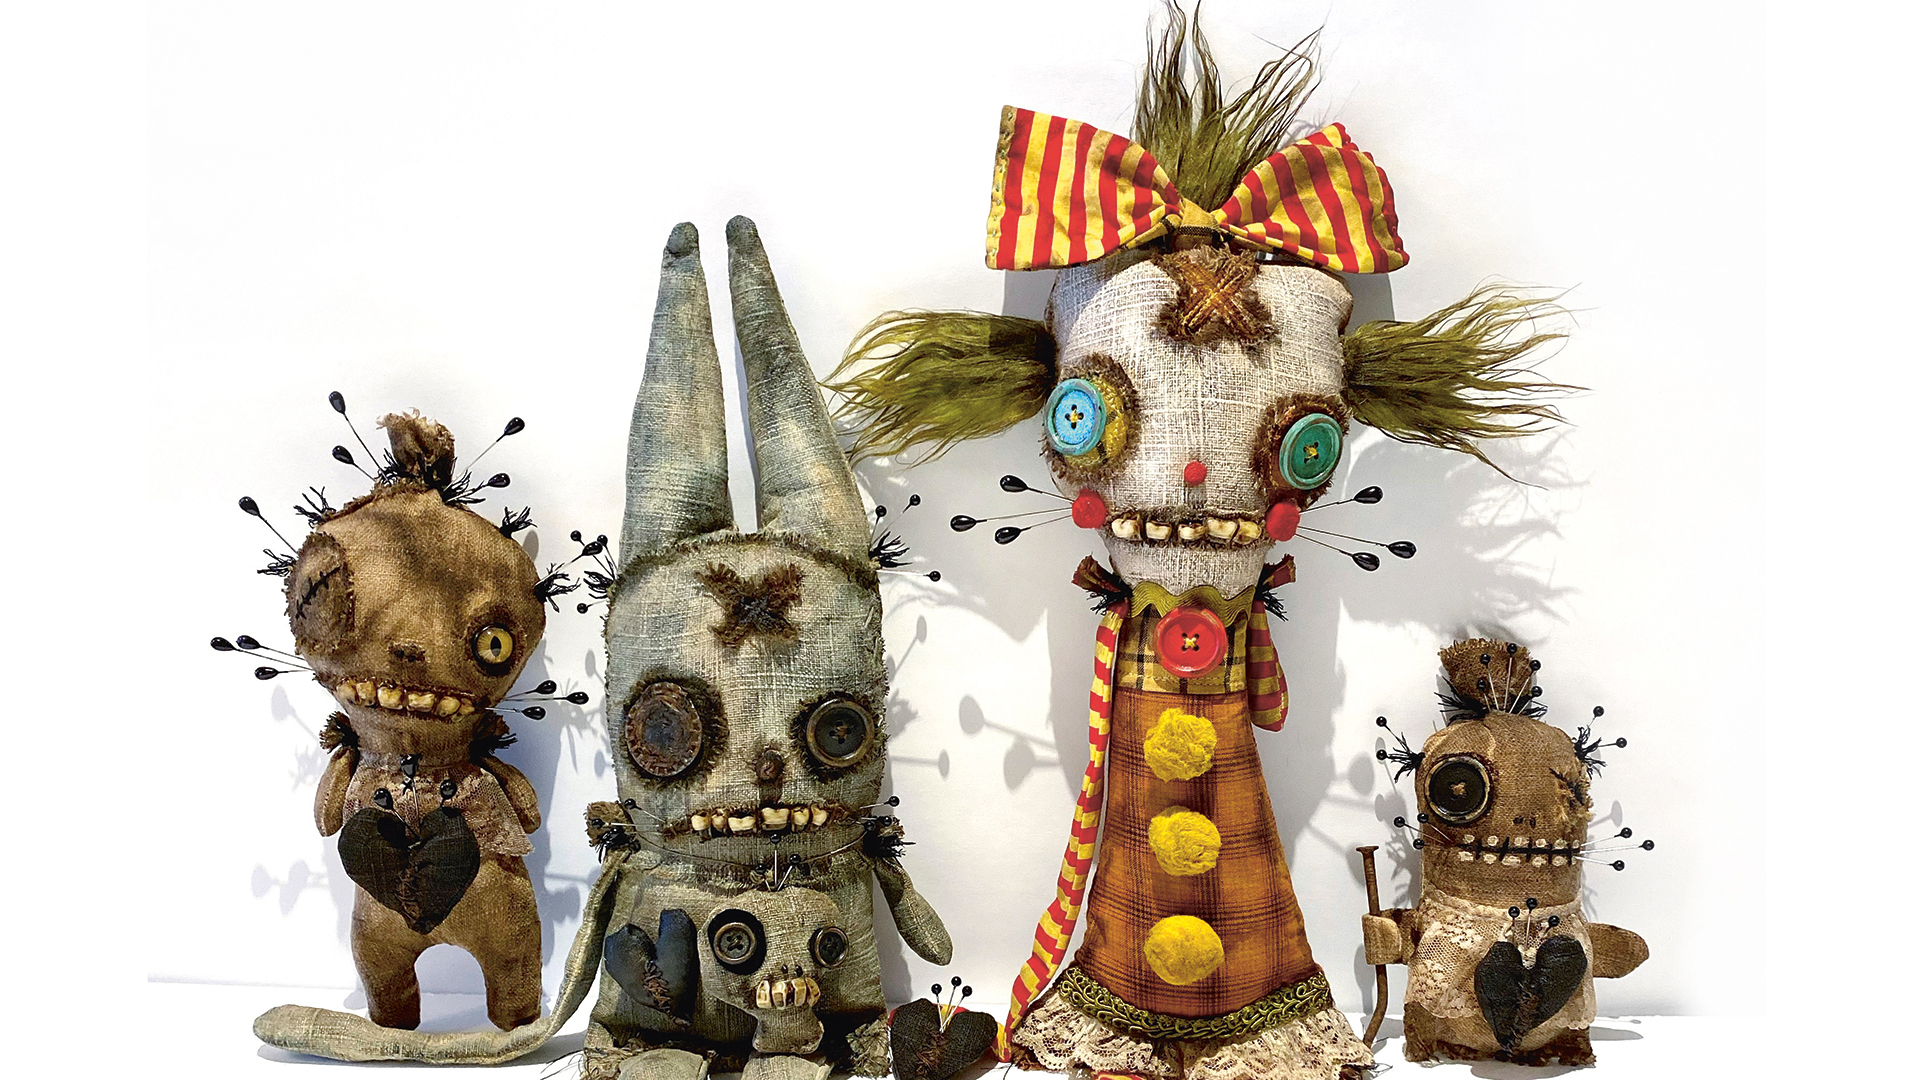 strange dolls by artist Junker Jane